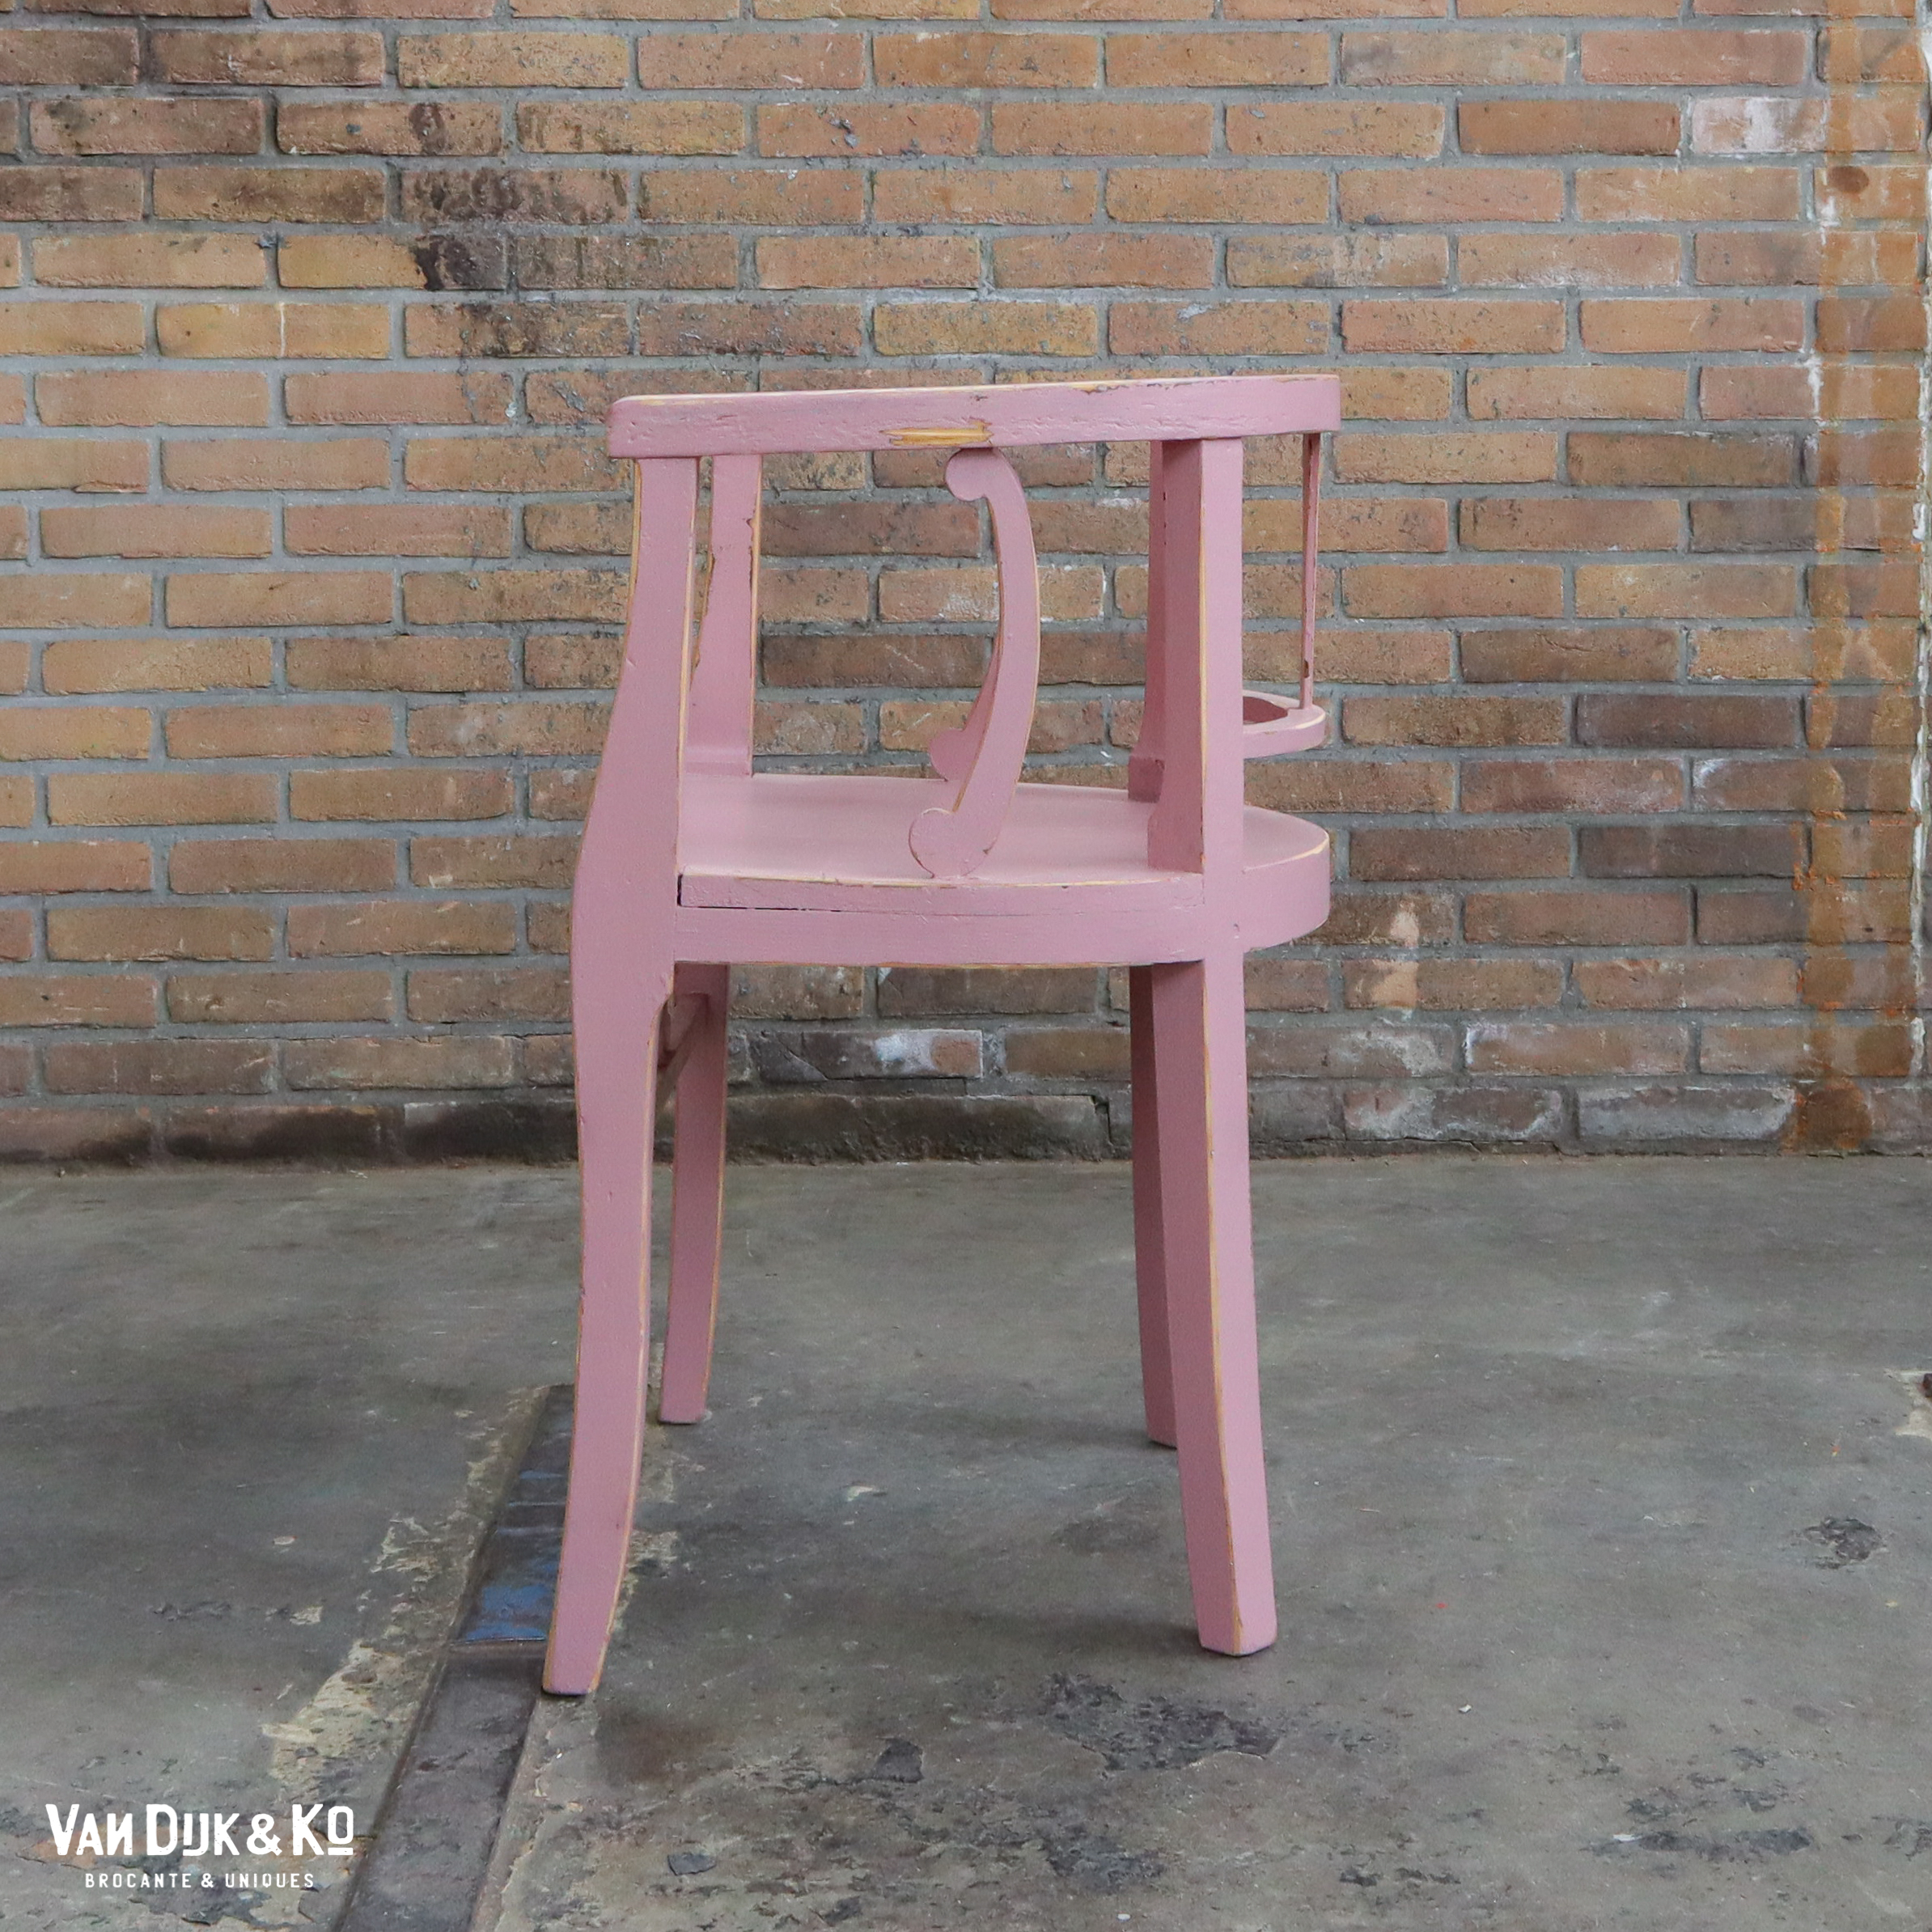 Brocante roze stoel » Van Dijk